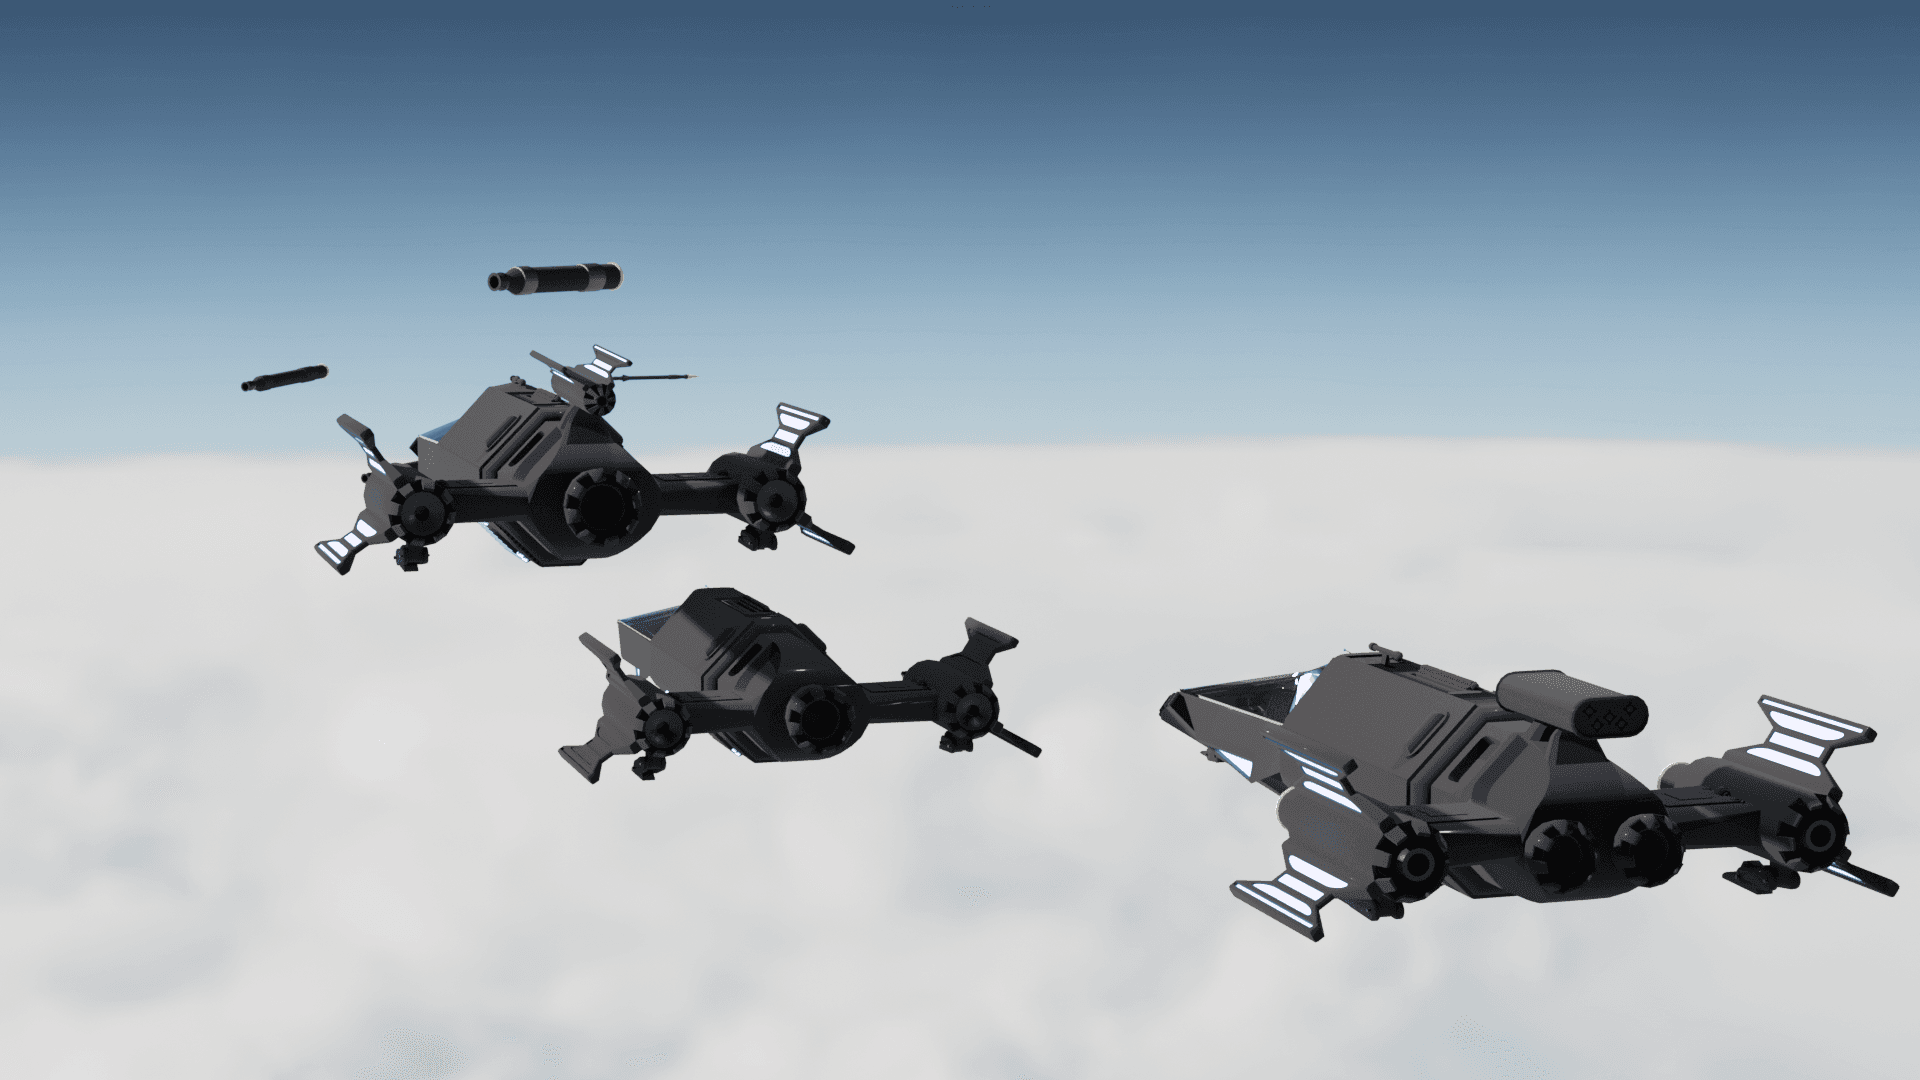 3 light fighters plus ordinace.fbx 3d model